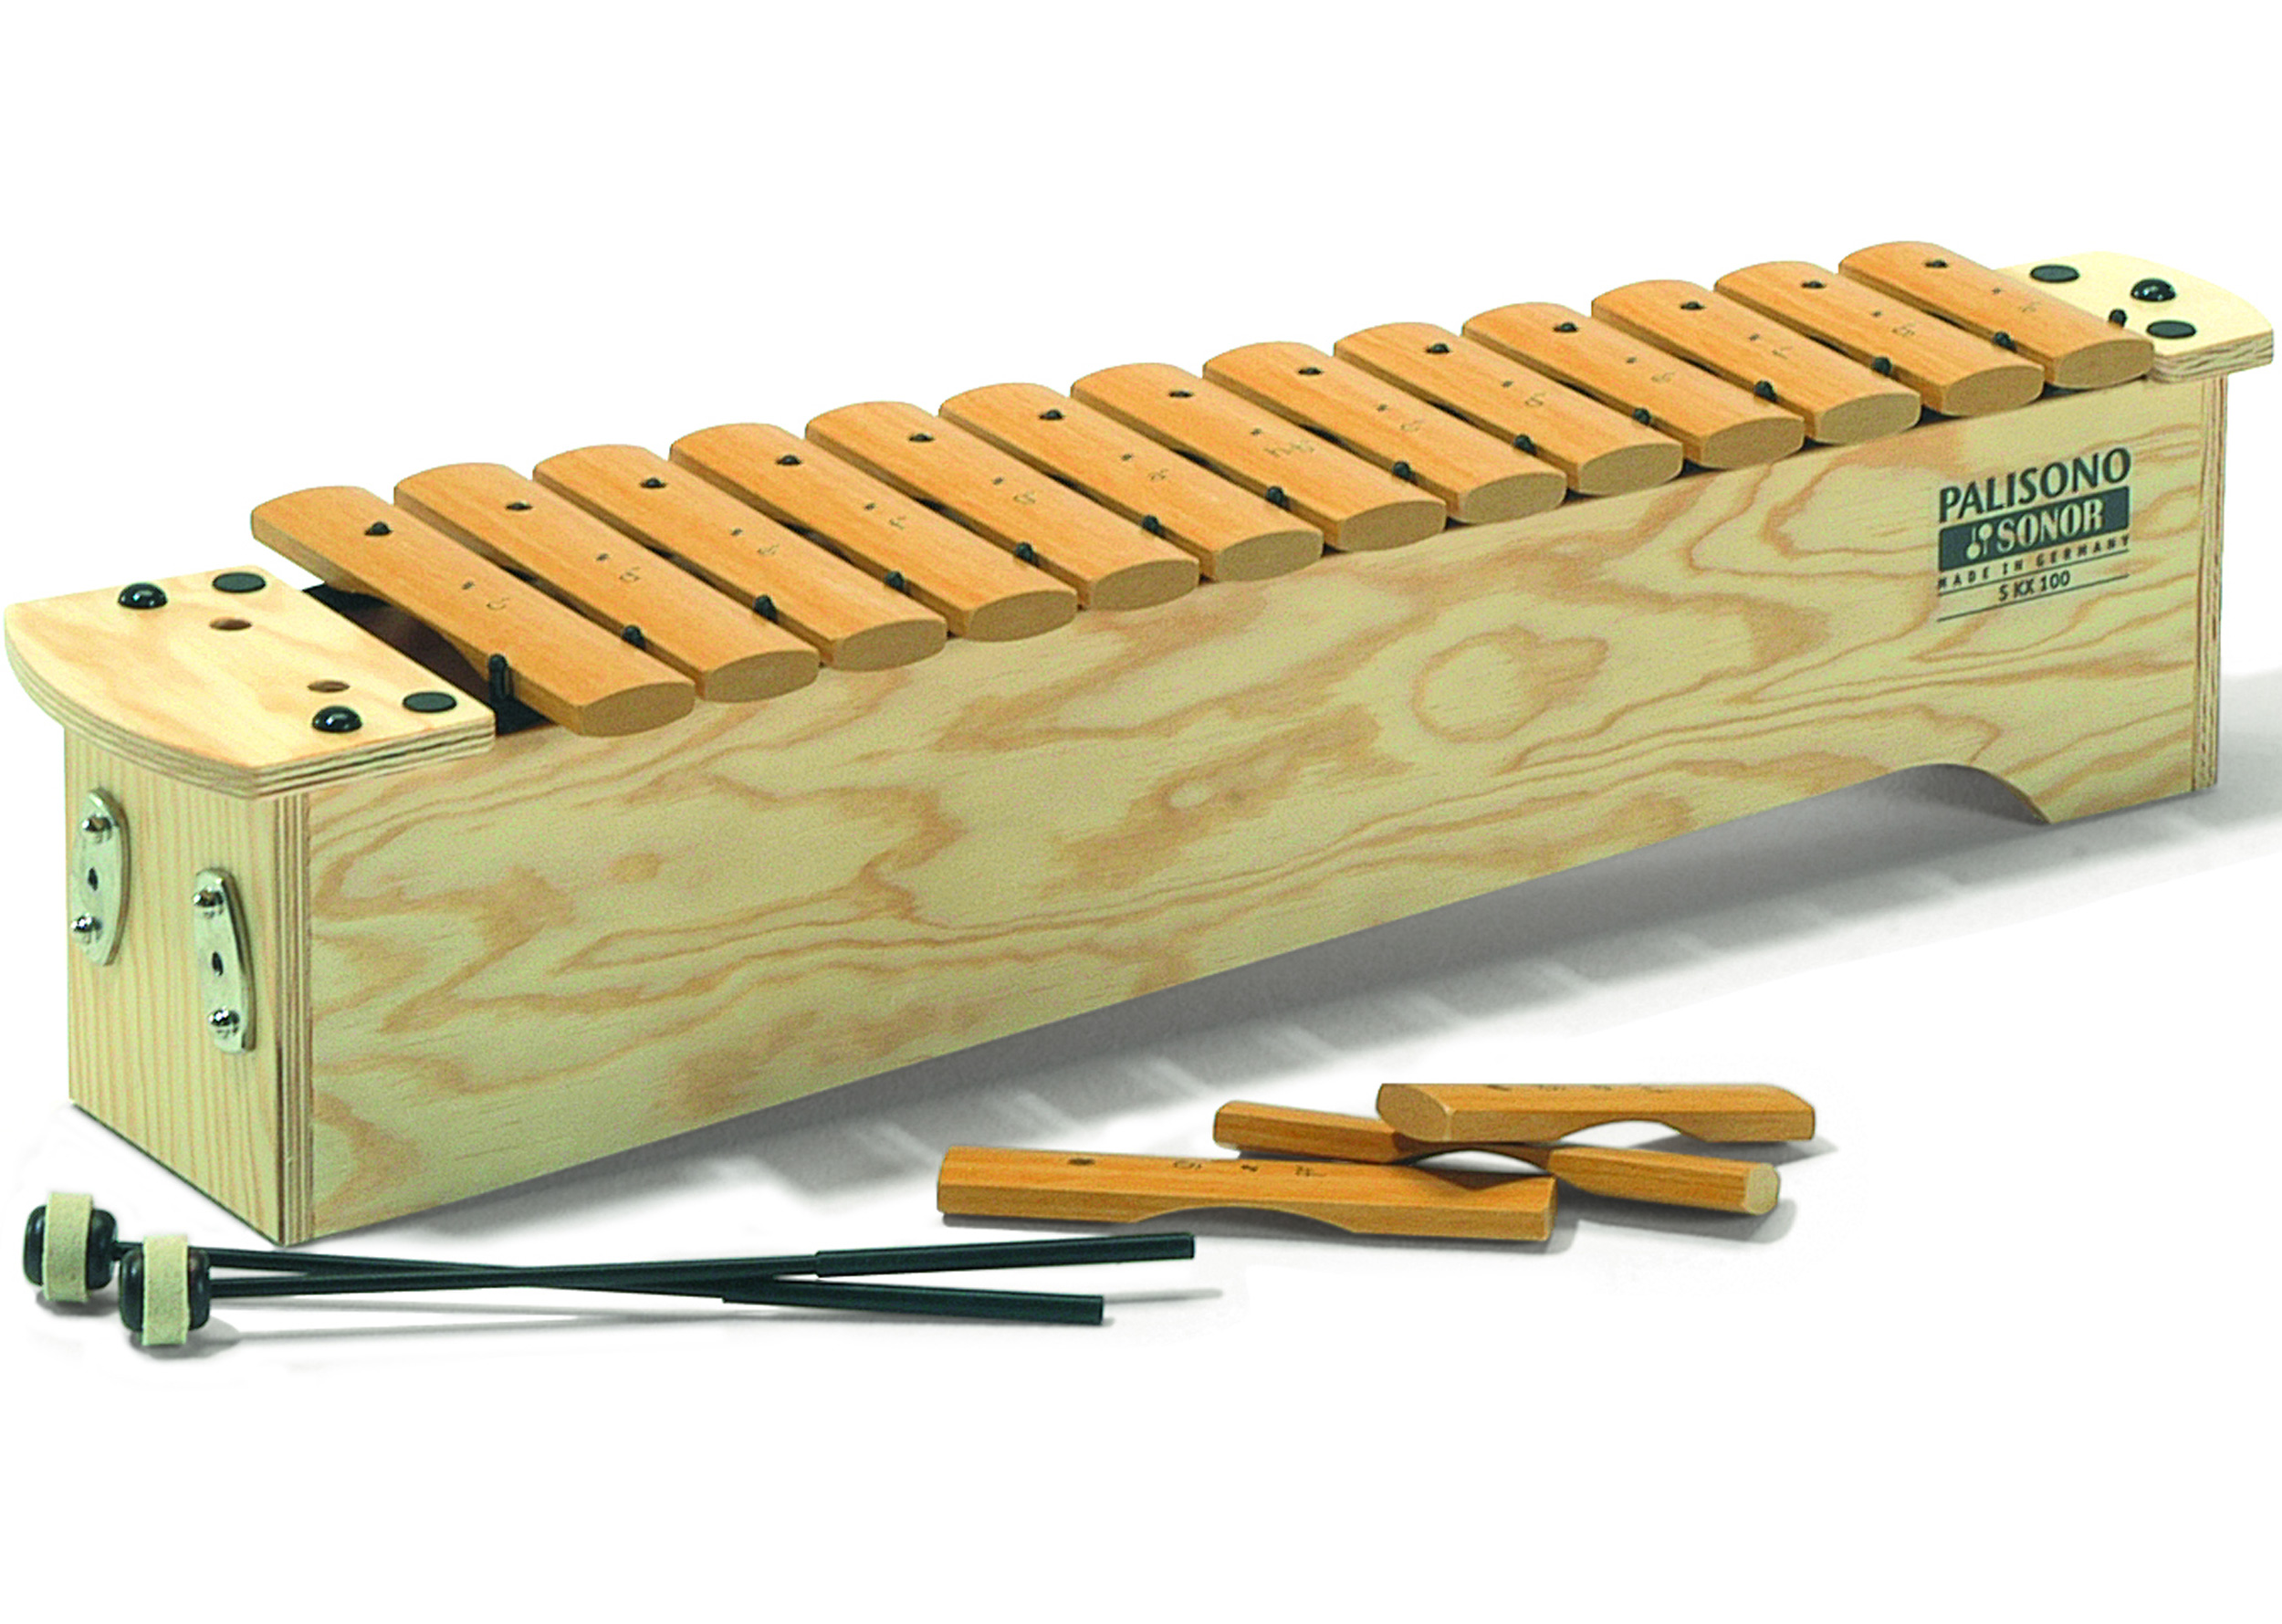 Sonor SKX100 Soprano Xylophone - Palisono (Glassfibre) Bars